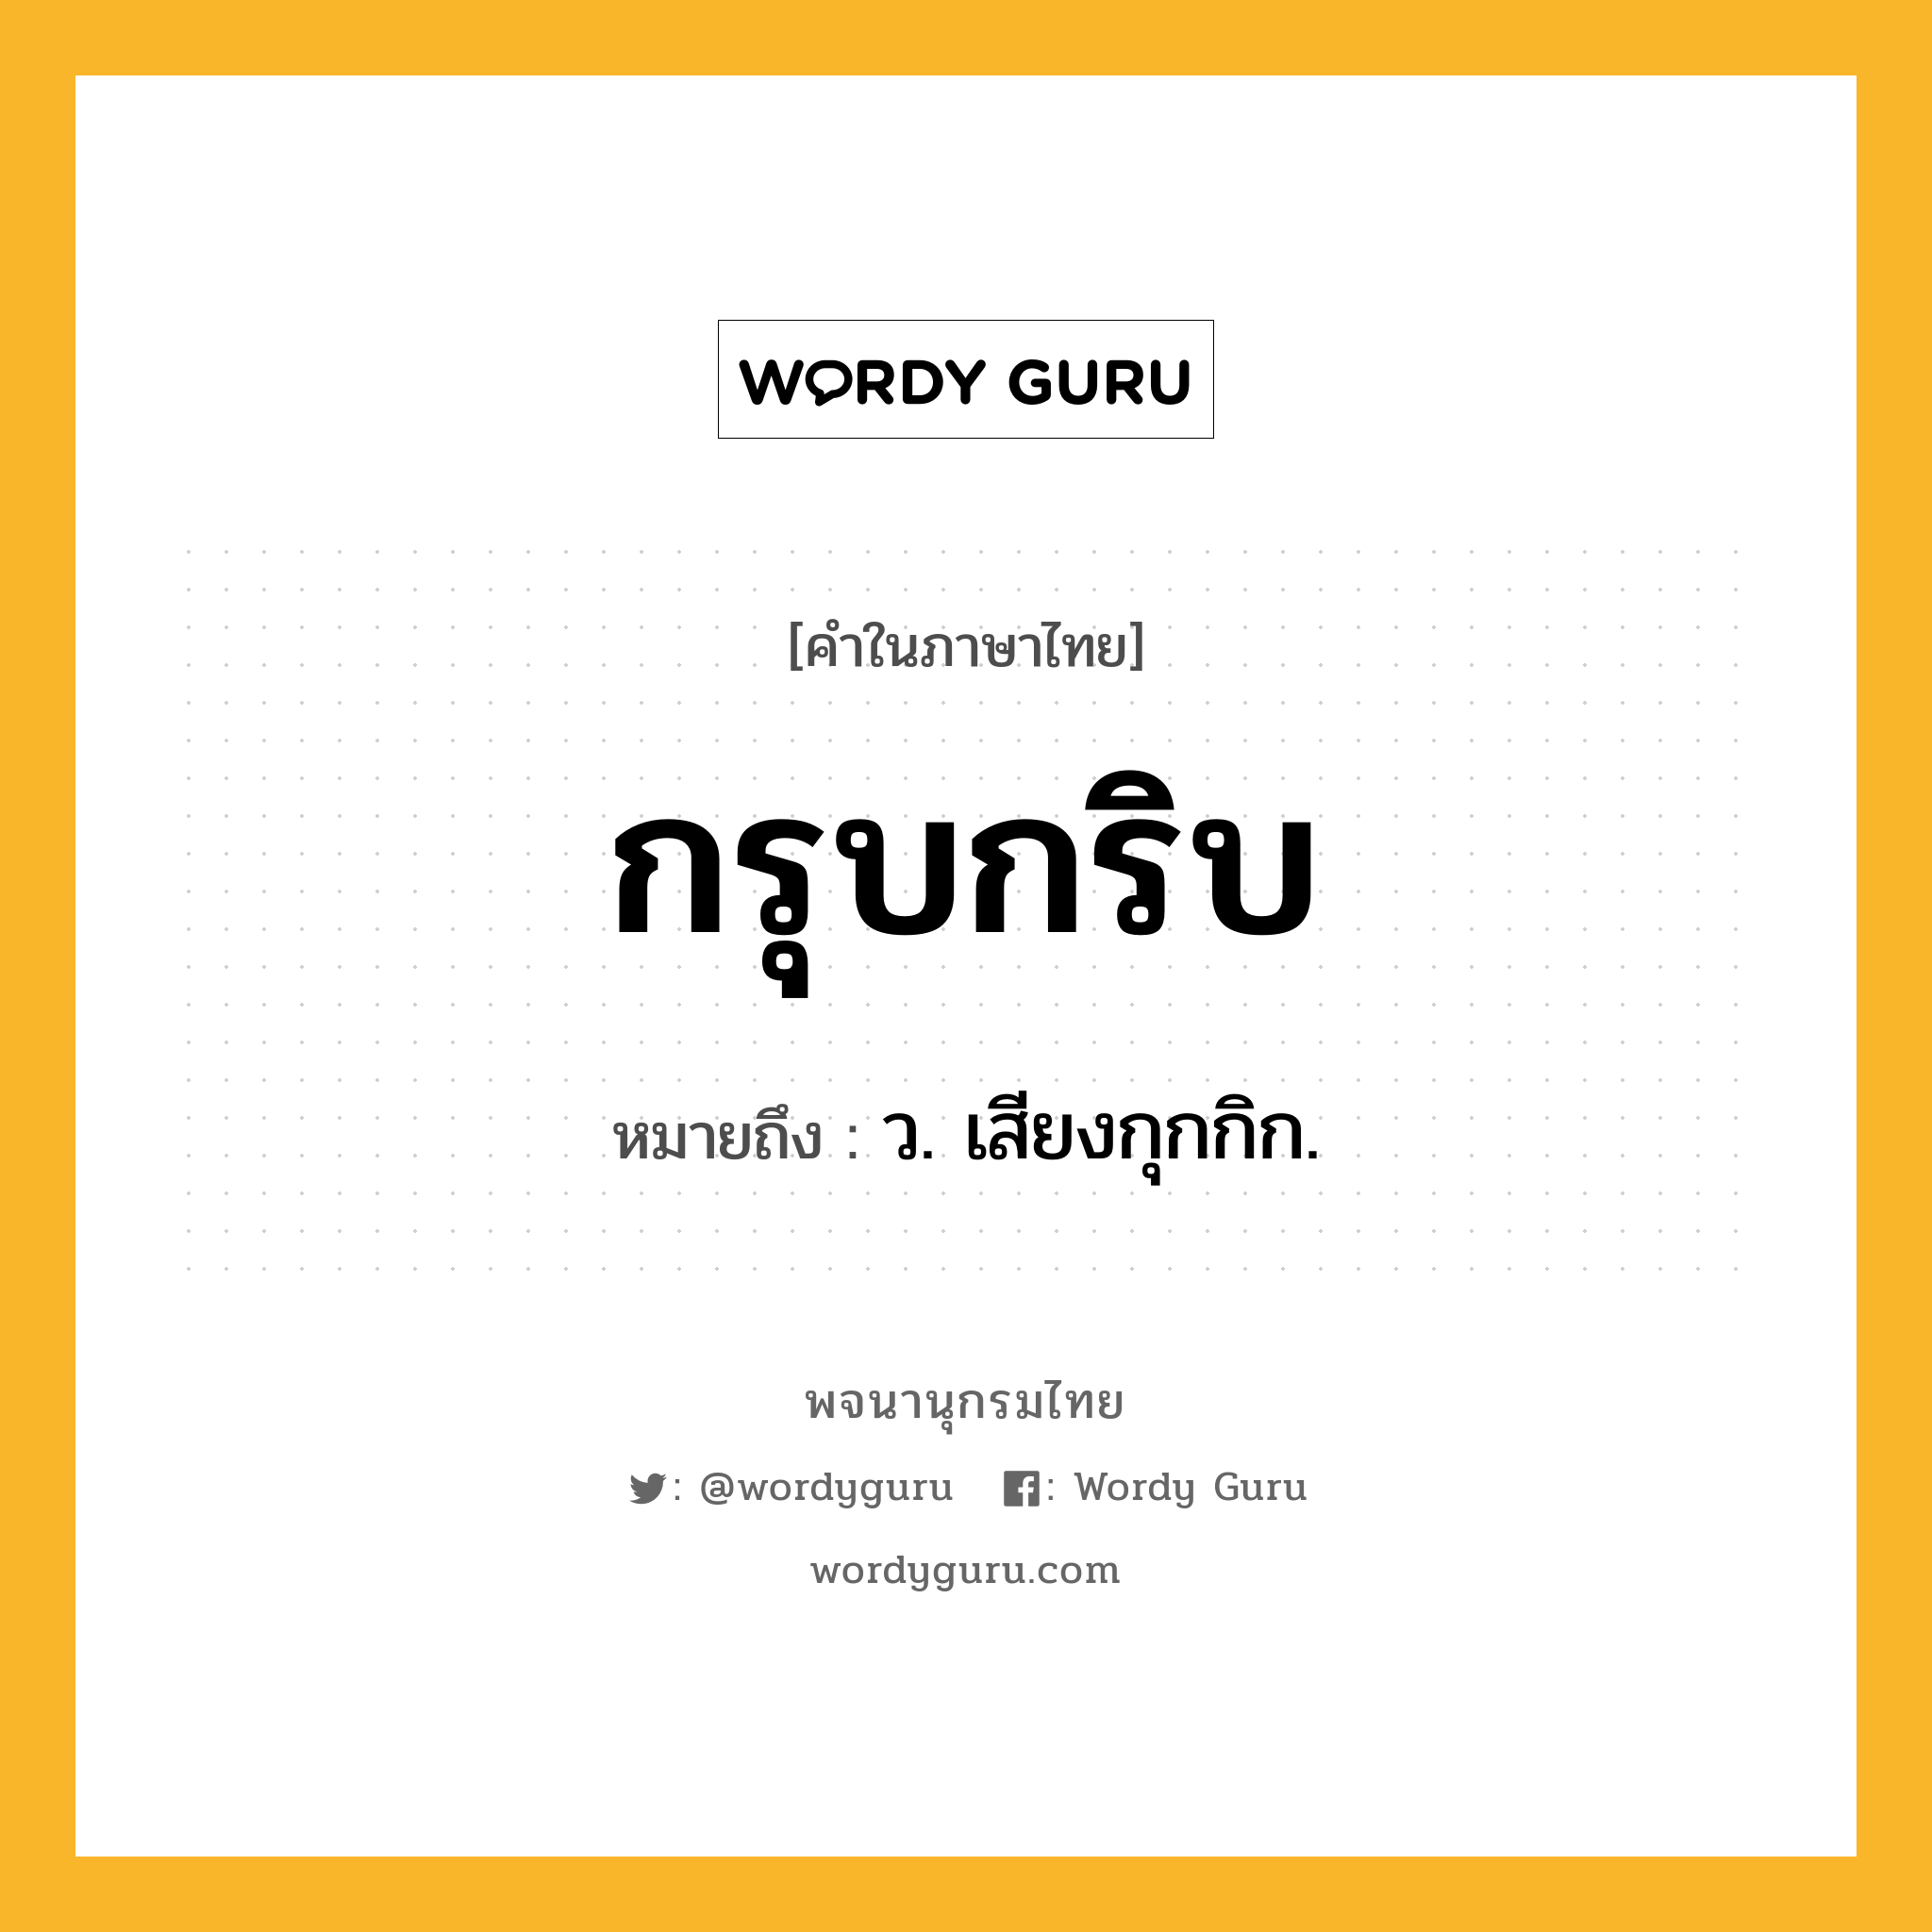 กรุบกริบ ความหมาย หมายถึงอะไร?, คำในภาษาไทย กรุบกริบ หมายถึง ว. เสียงกุกกิก.